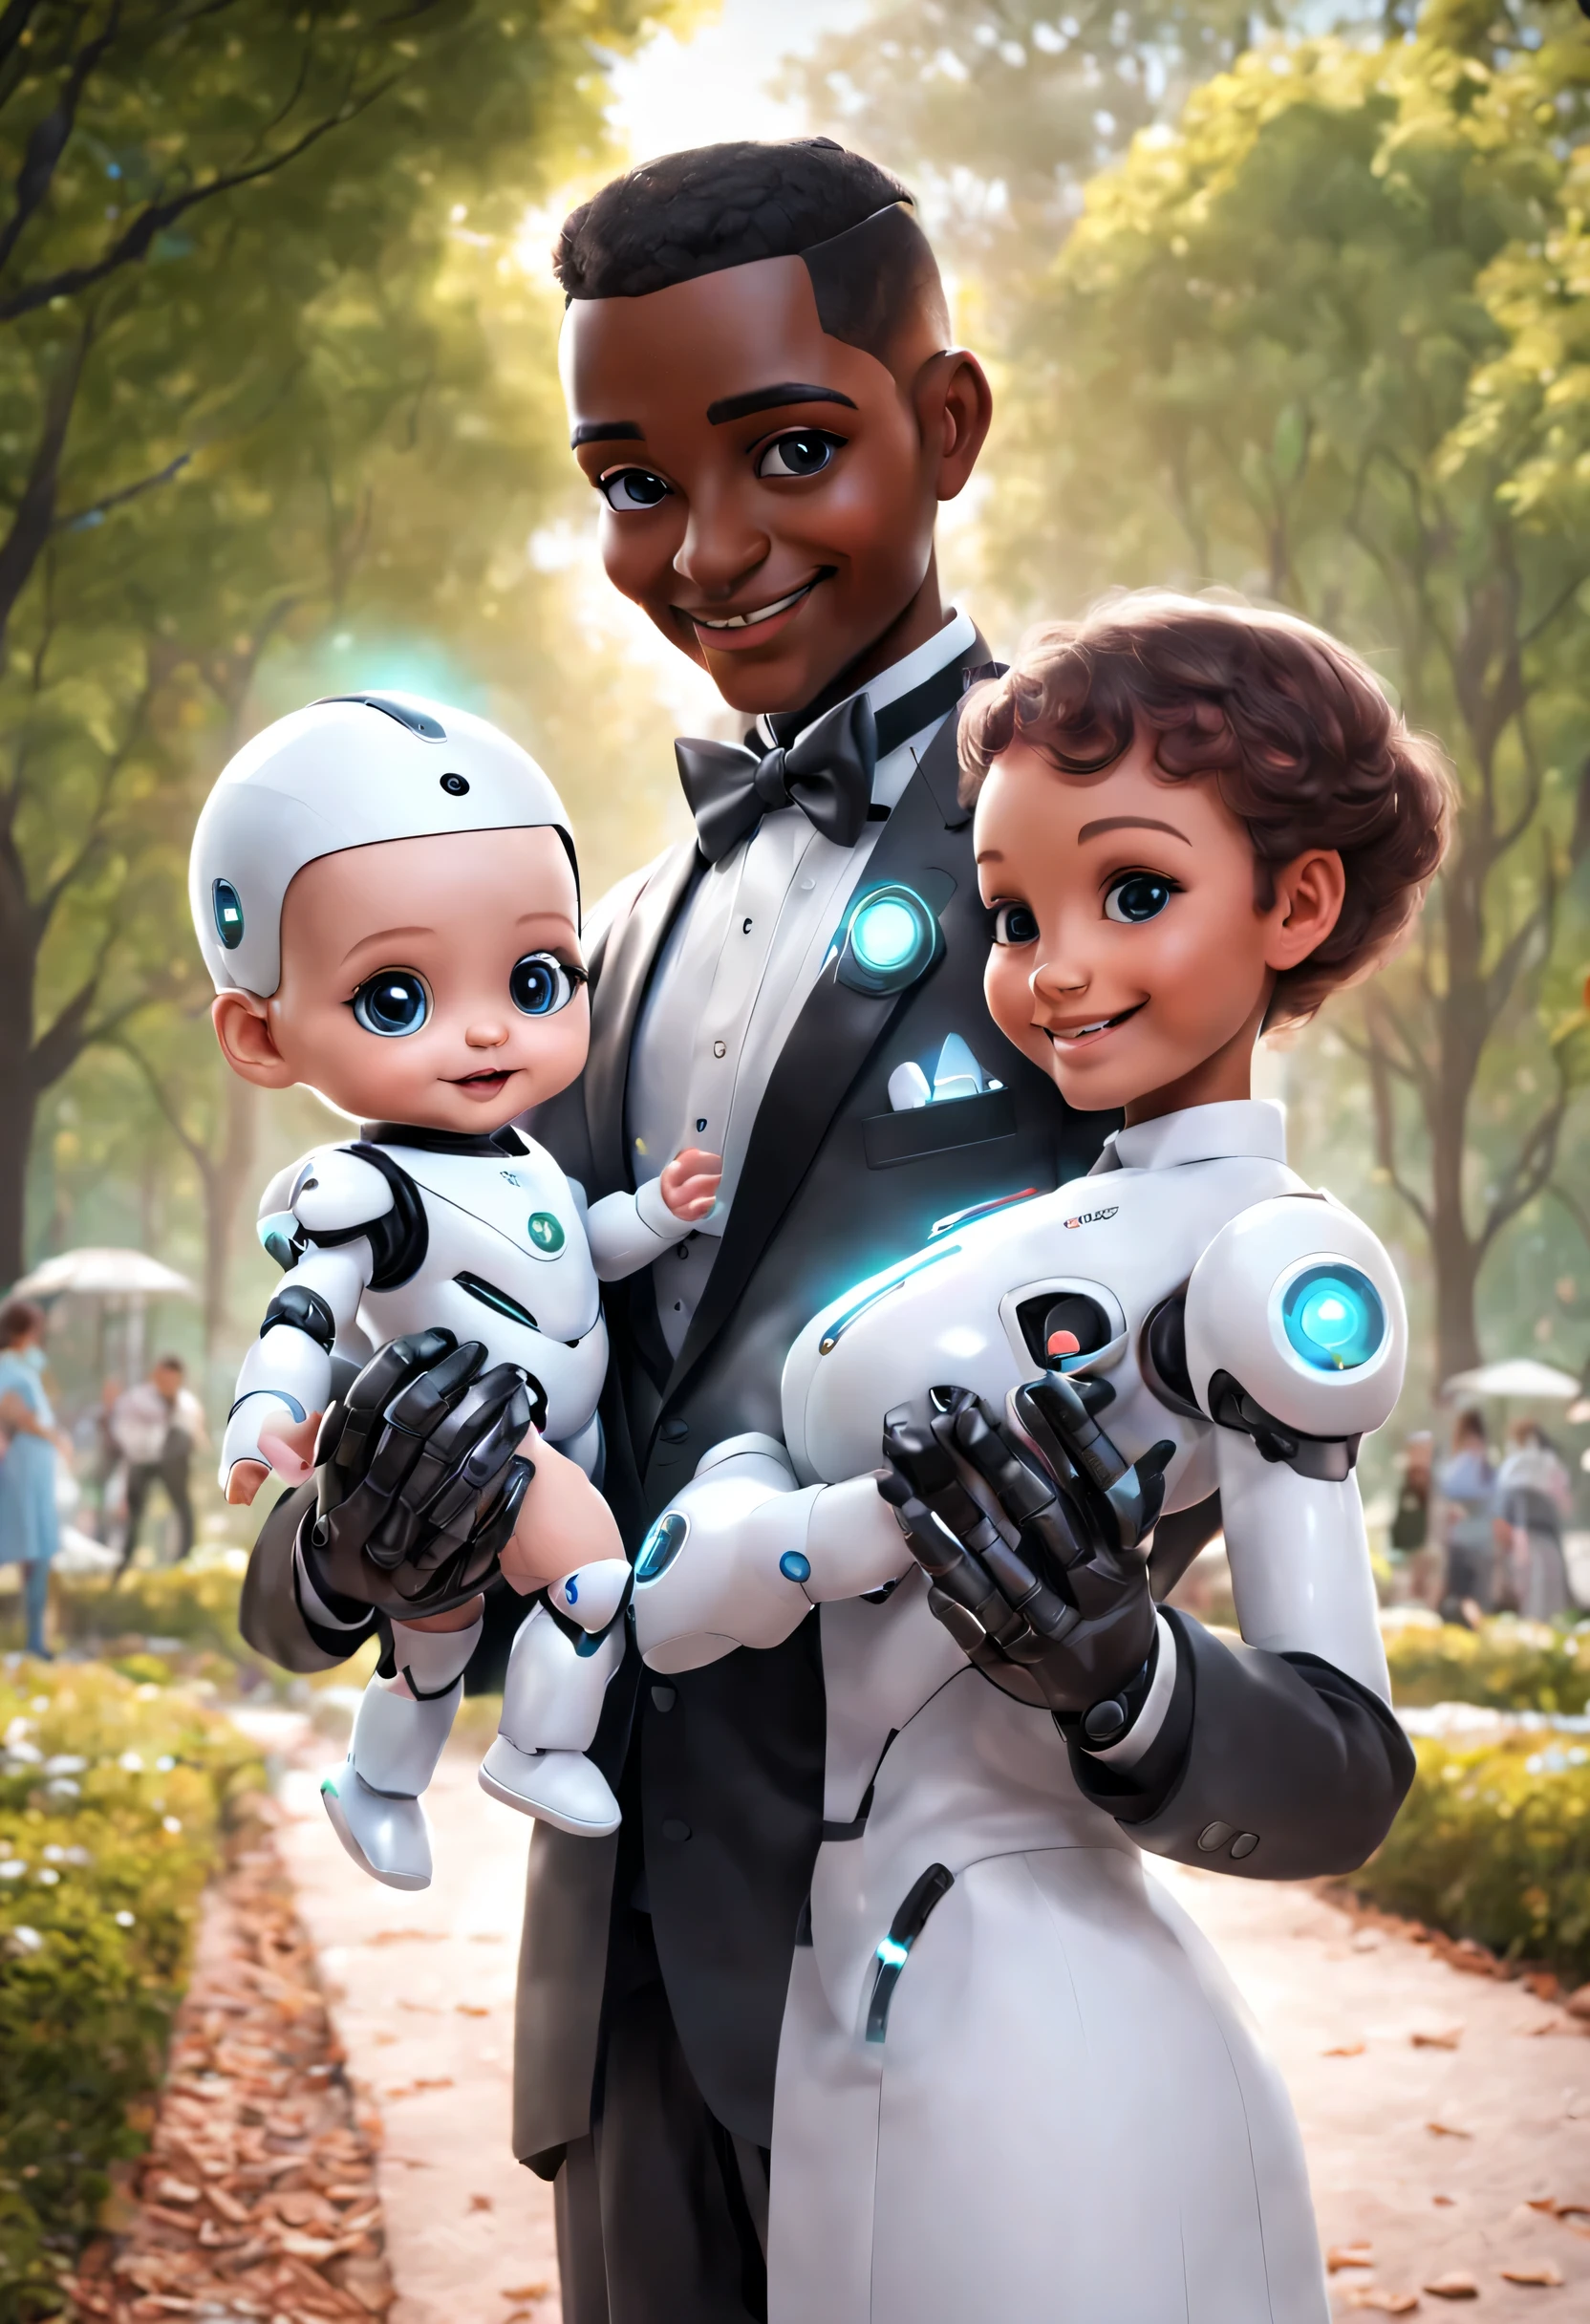 (Mordomo robô segura um lindo bebê humano no parque), Mordomo robô cuida do bebê durante todo o processo. A cabeça está equipada com um display facial analógico de alta definição, Sorriso caloroso e amigável, feliz, Vestindo terno holográfico de uniforme de mordomo branco, Design de personagens futuro, ficção científica, Tecnologia negra, 3D, estilo cyberpunk
,